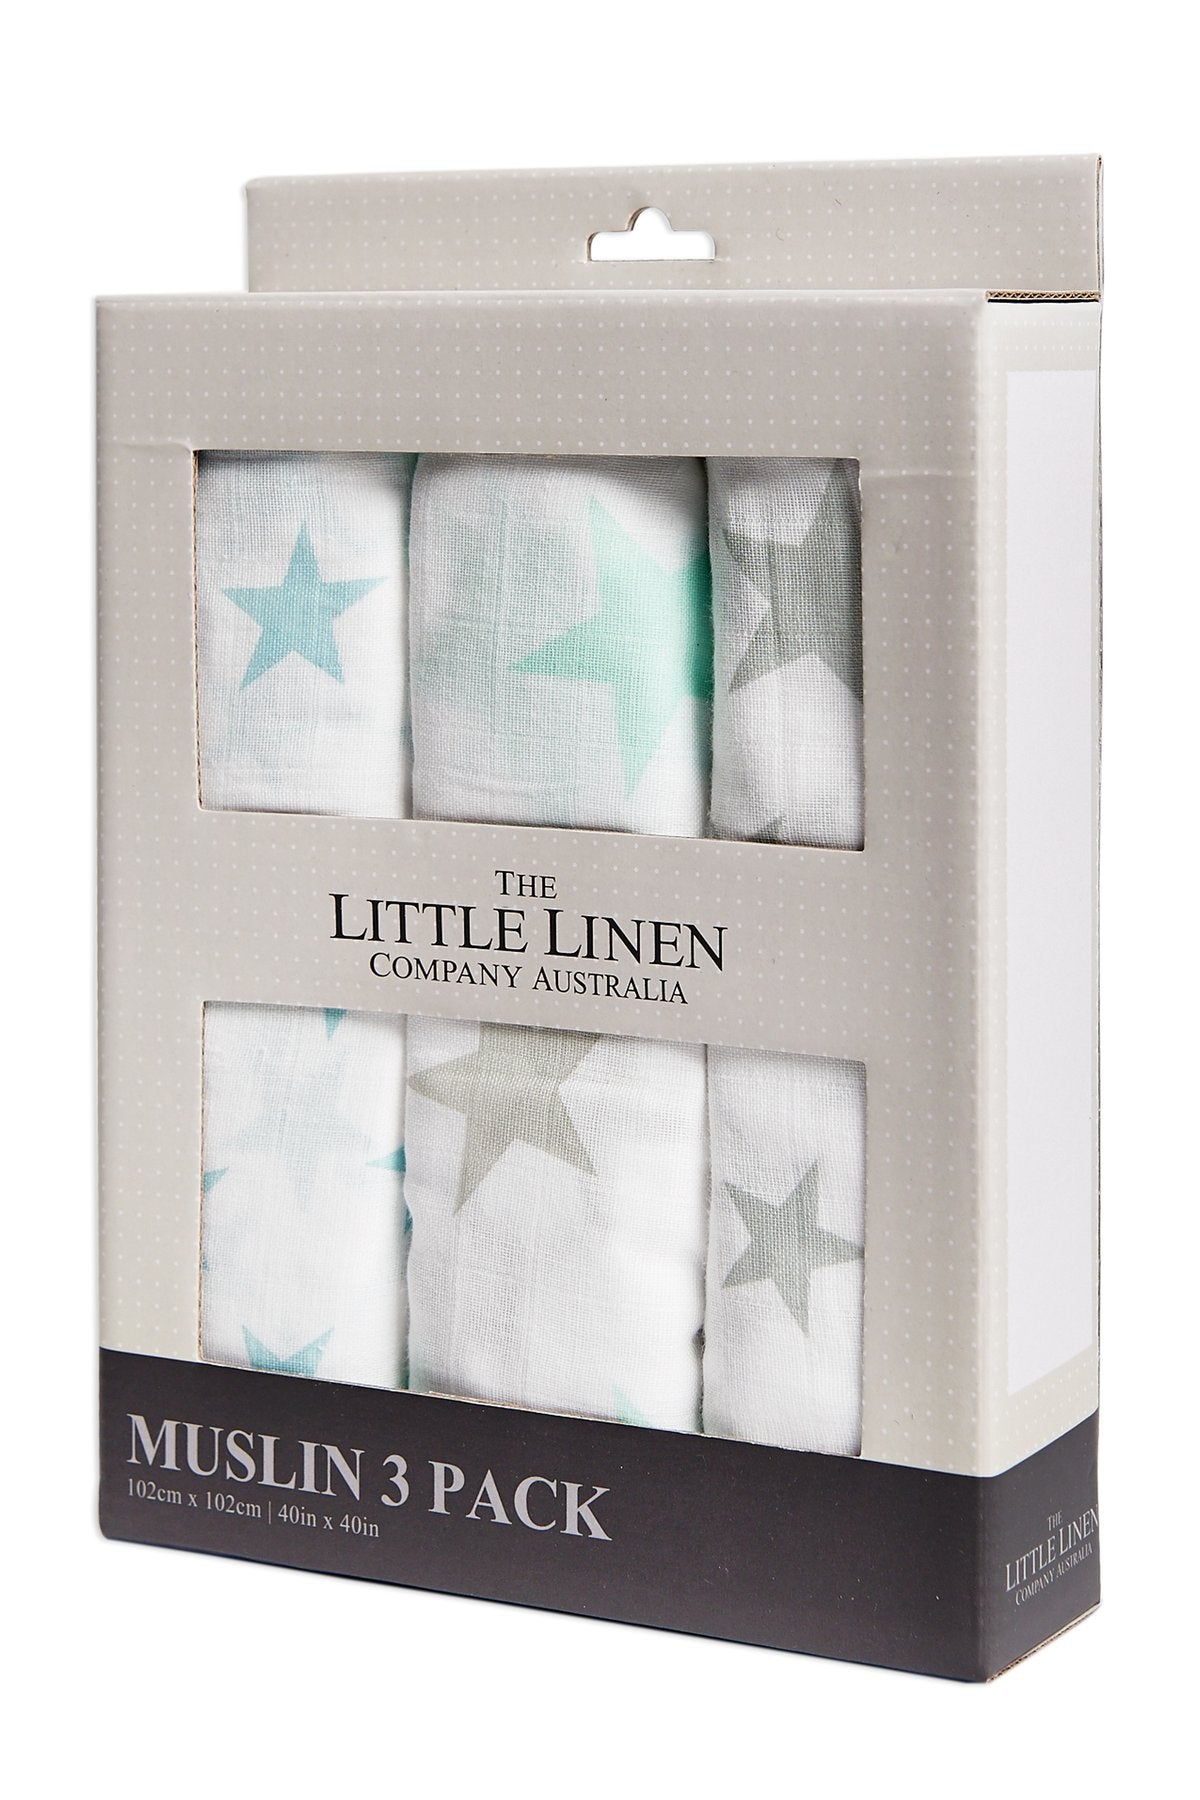 Little Linen Cotton Muslin Wrap 3 Pack Set - Teal Star